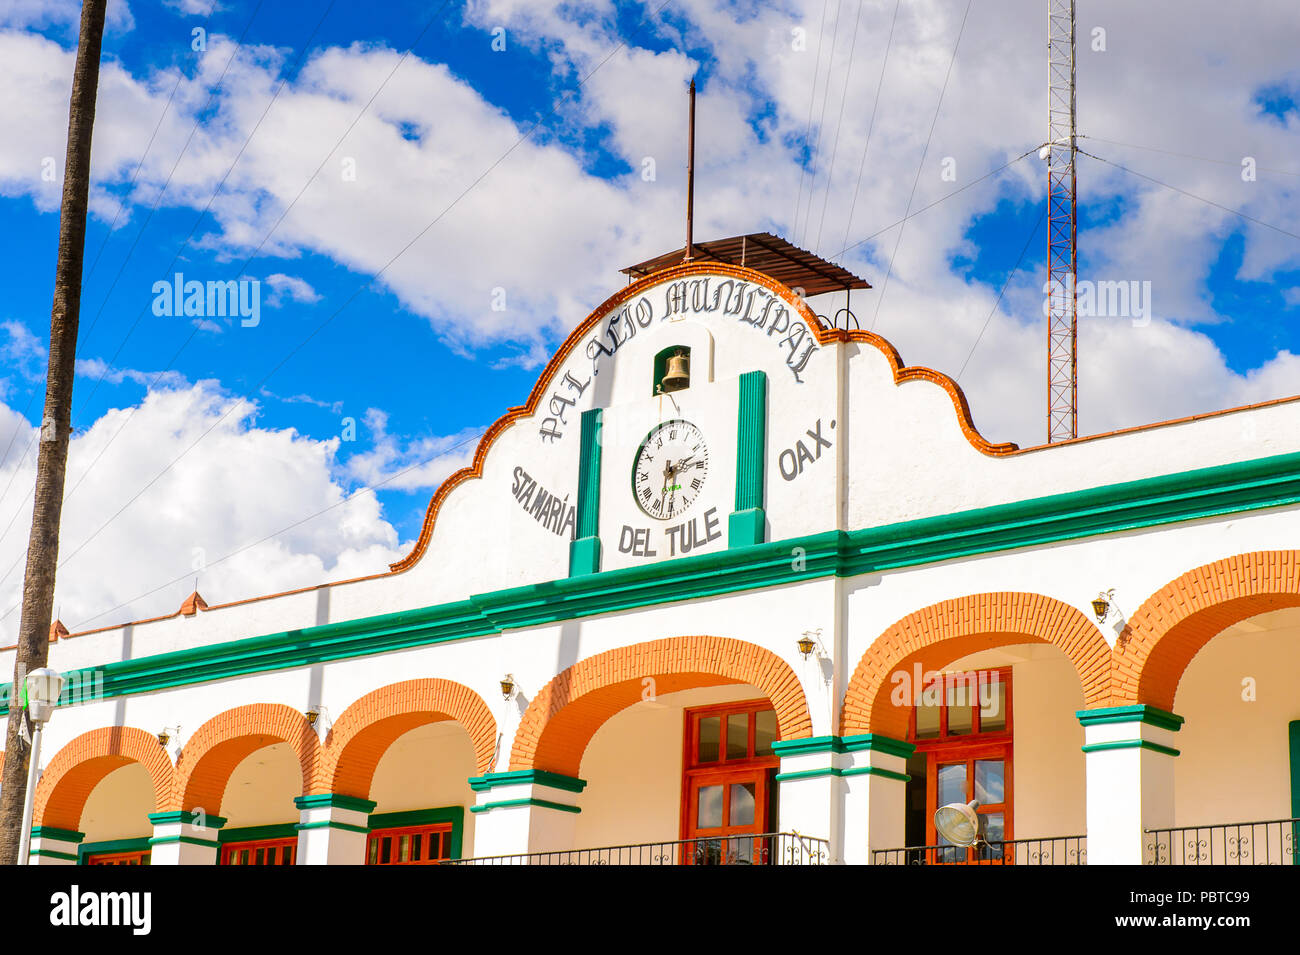 CIty hall of Santa Maria del Tule, Mexico, Valles Centrales region. Stock Photo